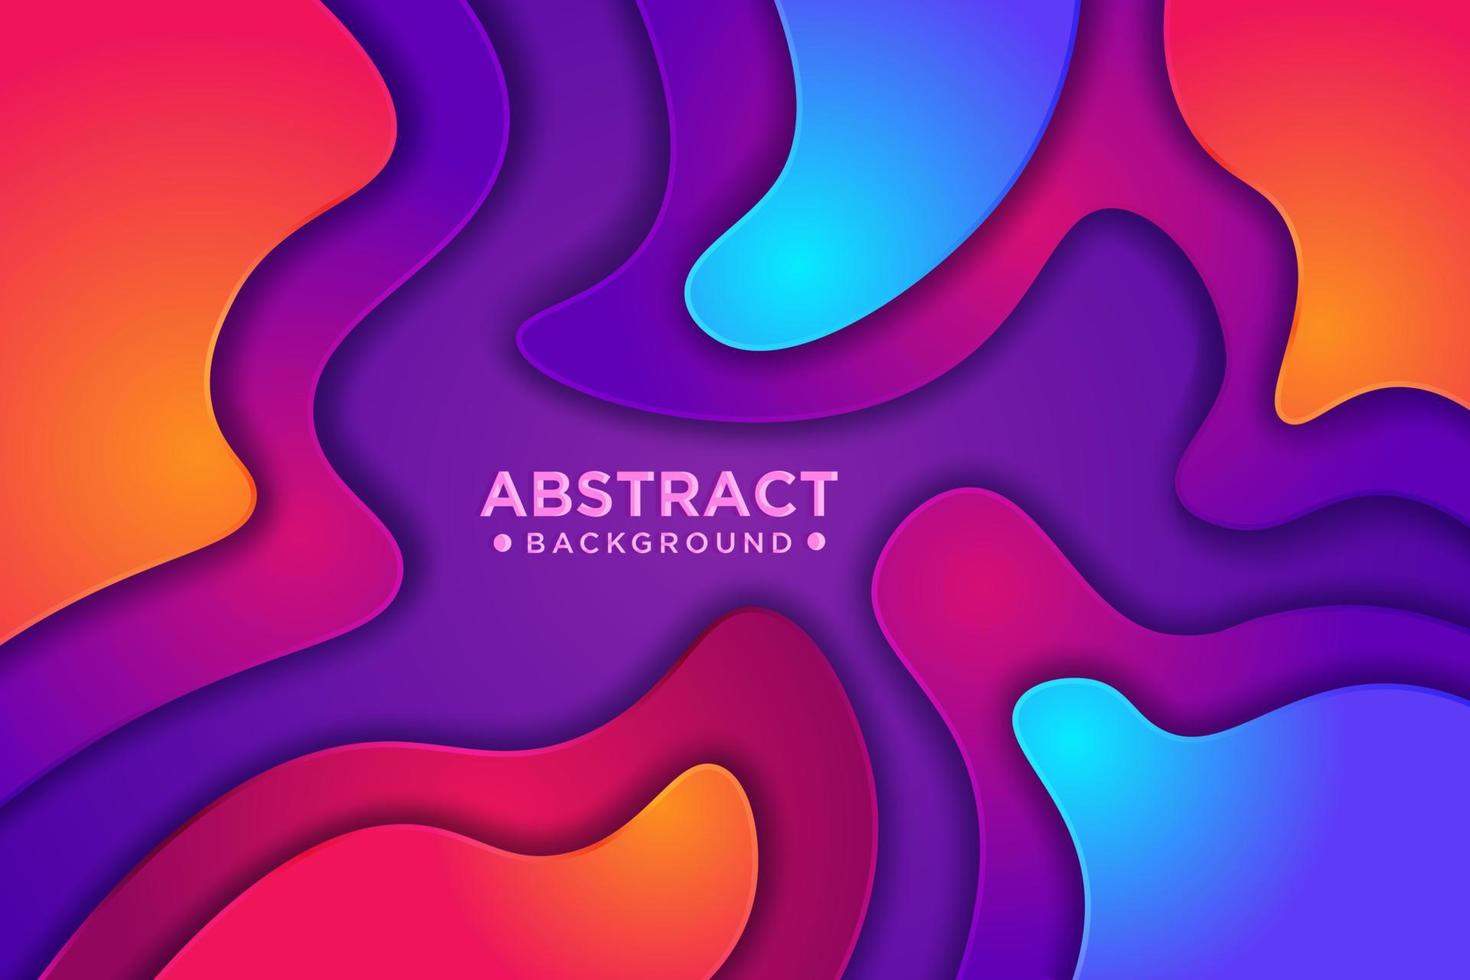 sfondo colorato ondulato astratto con stile 3d. sfondo liquido moderno. fondo strutturato astratto con la miscelazione di colore rosa, viola, blu e arancione. illustrazione vettoriale eps10.